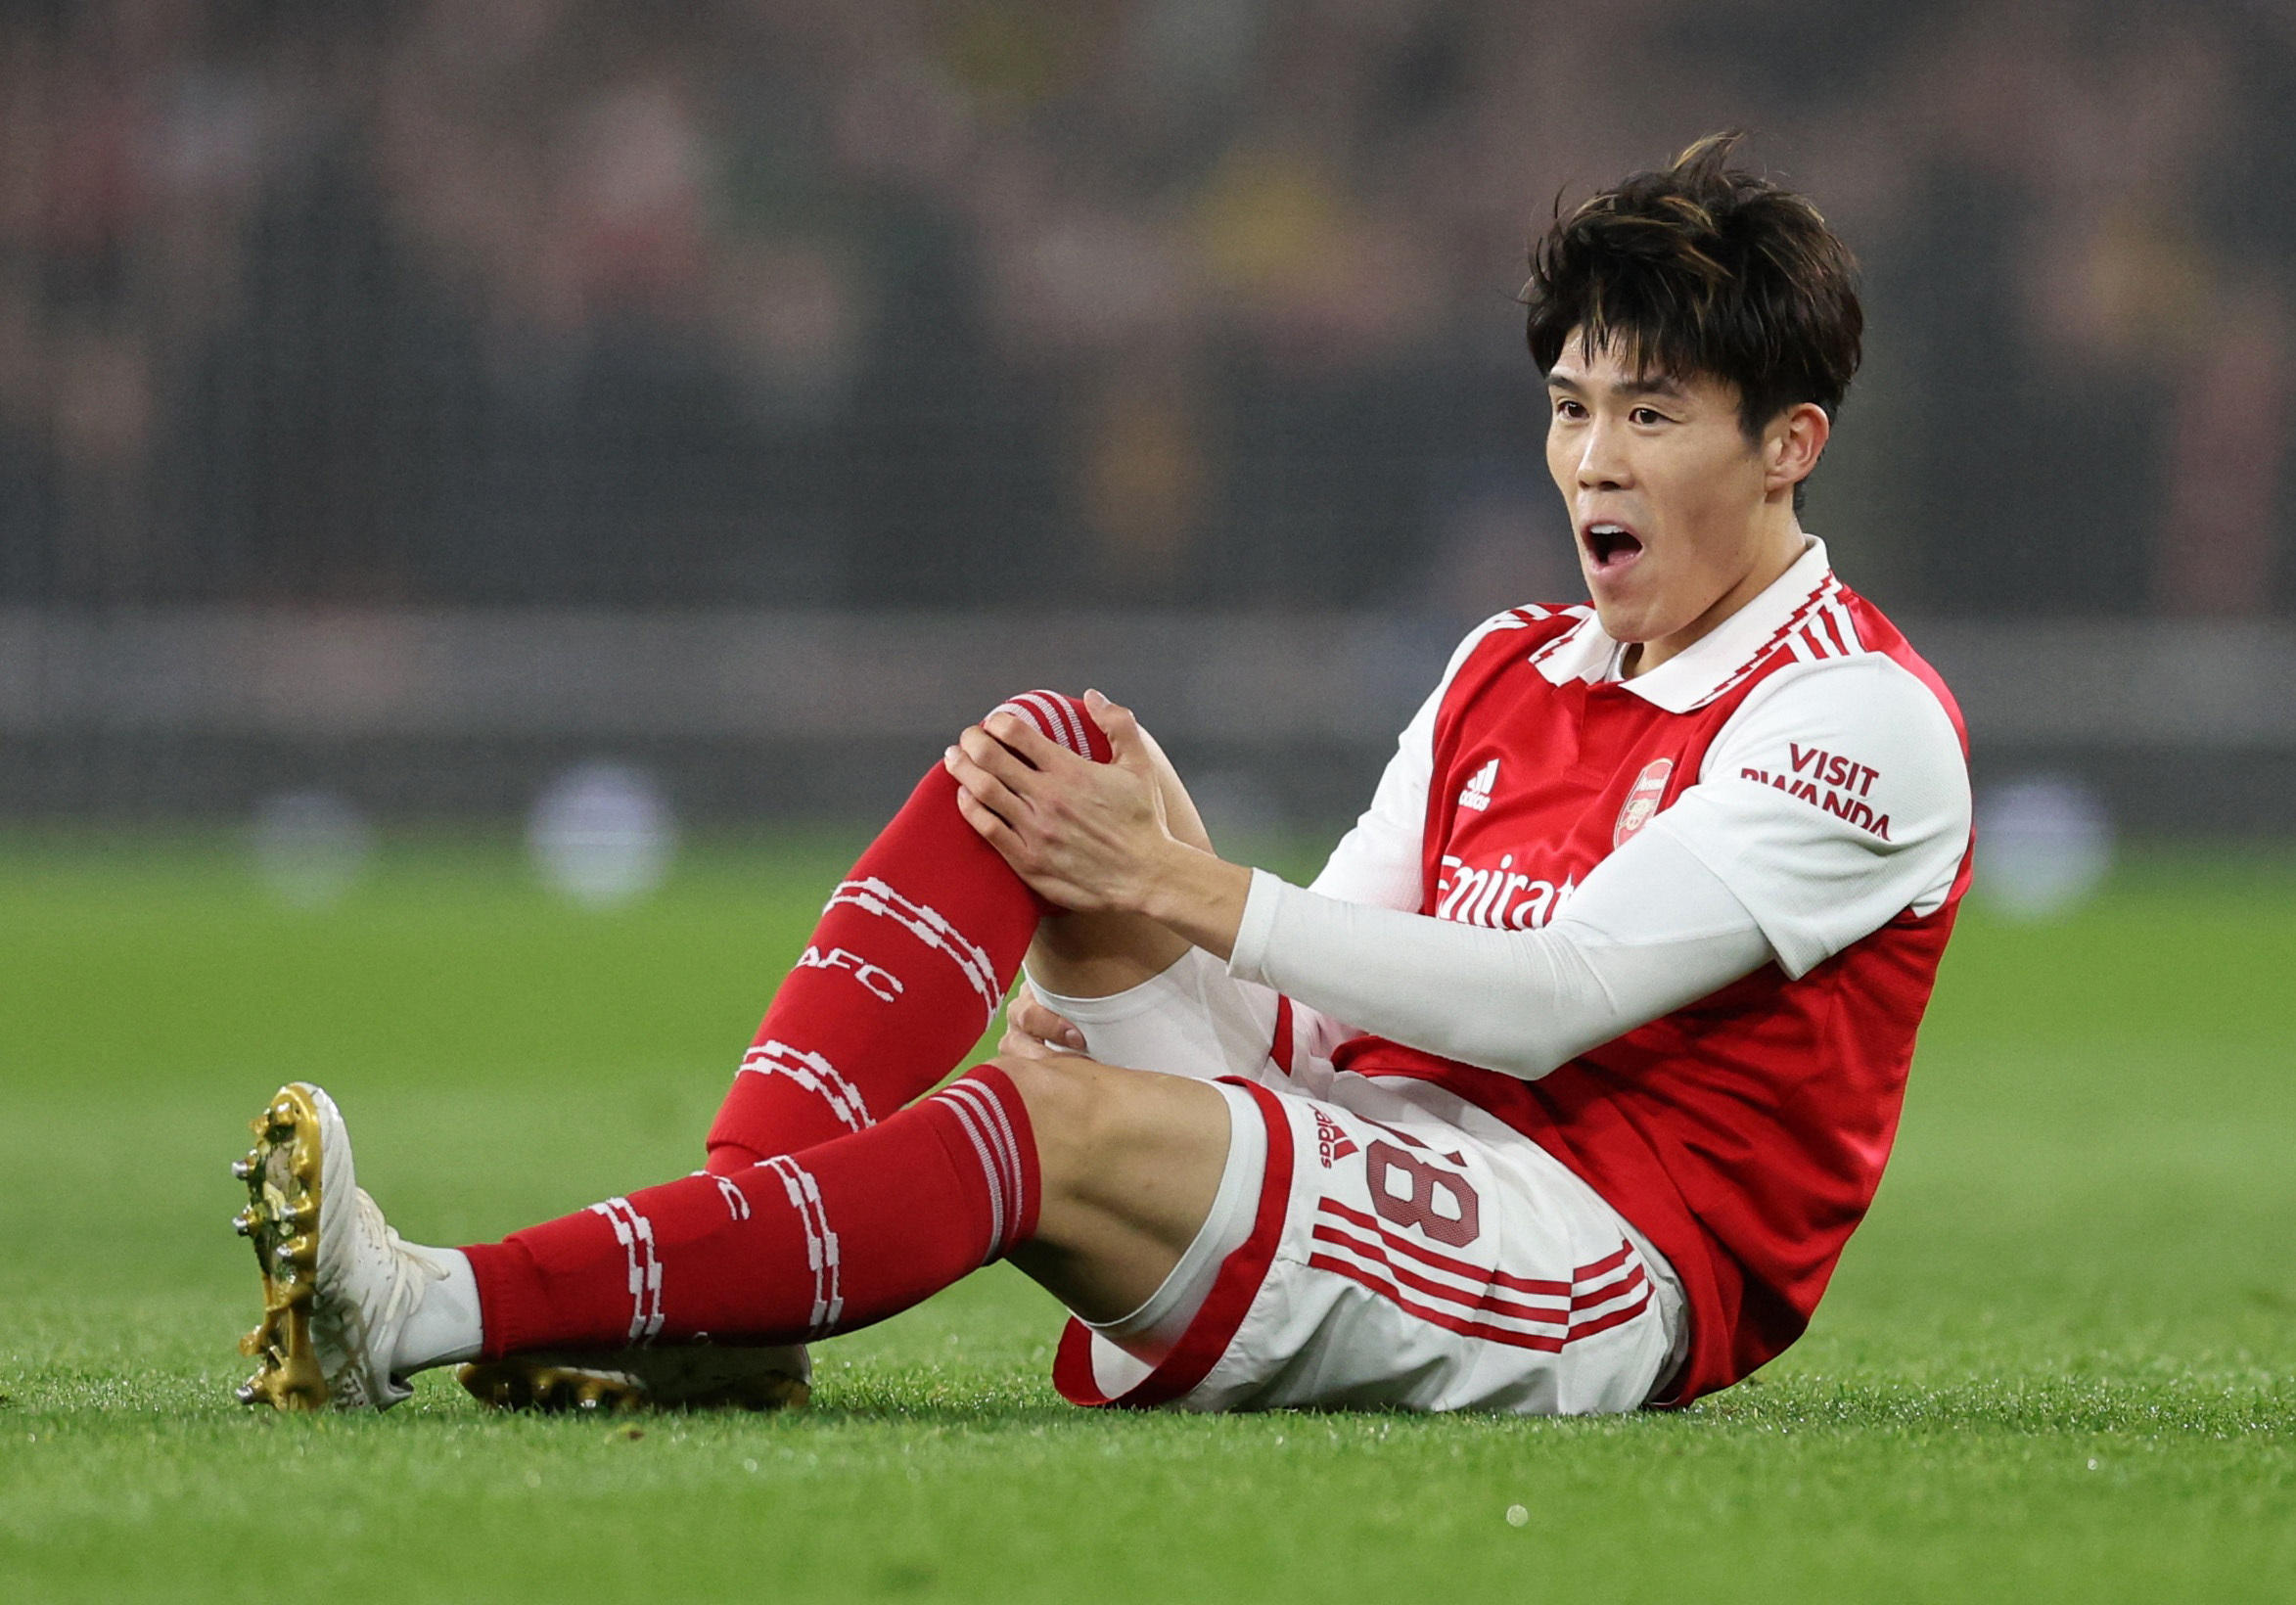 Season over' - Arsenal fans bemoan injury update on 'Diaby 2.0'